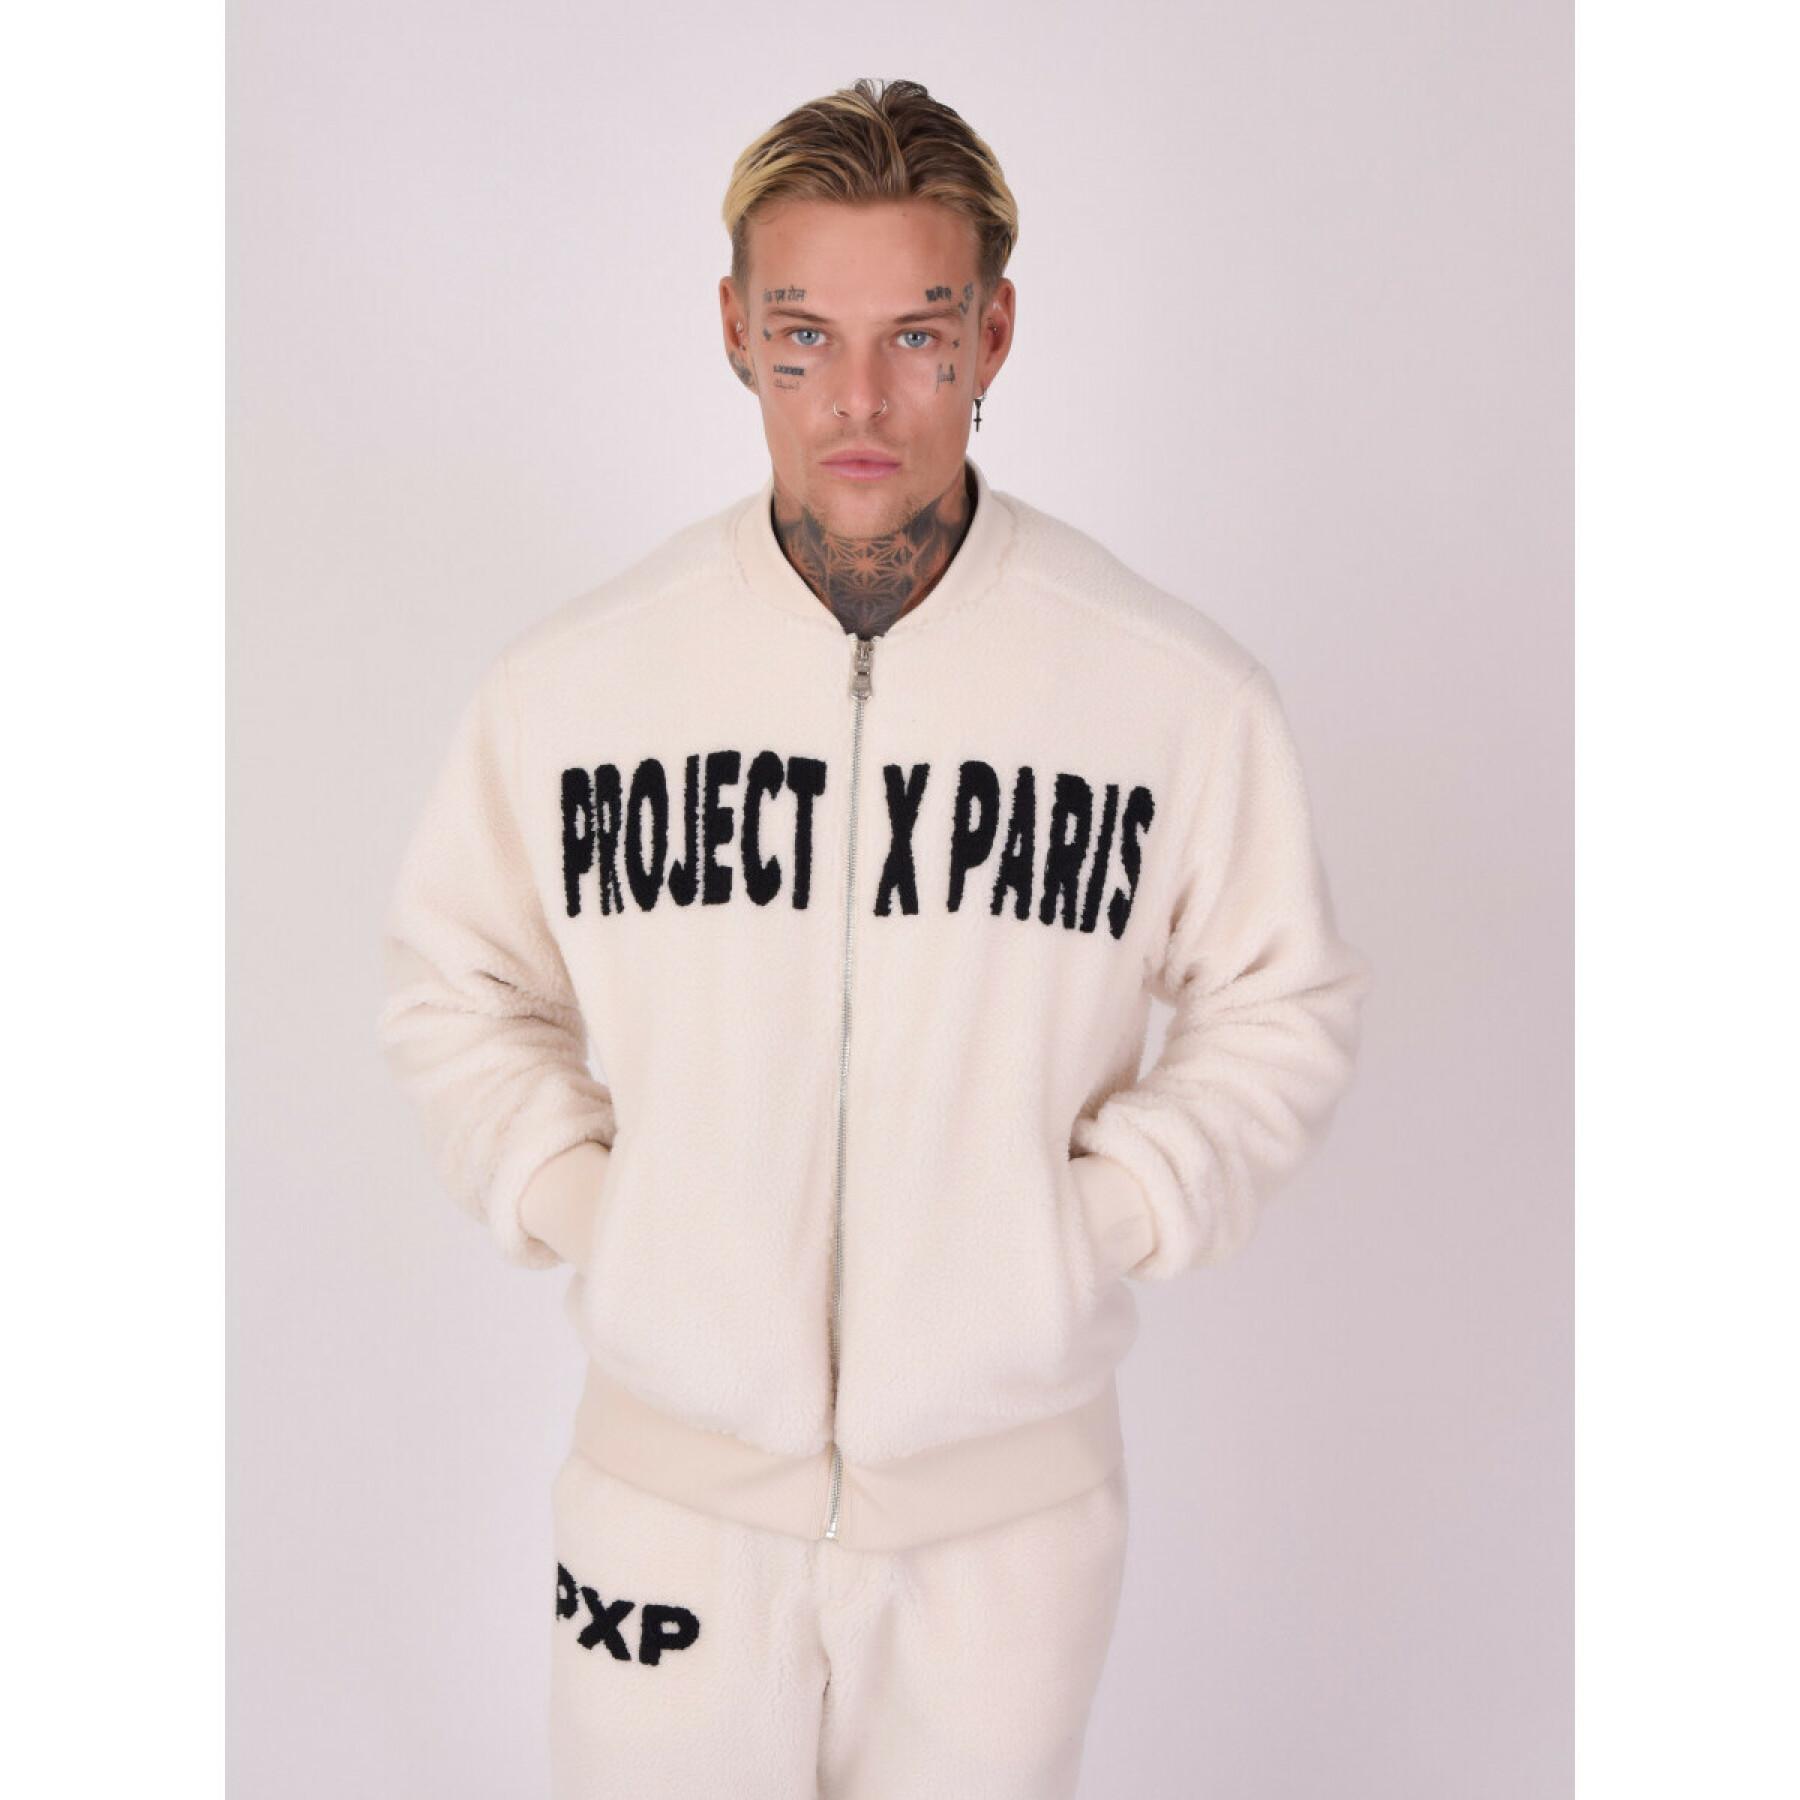 Teddy jacket "pilou pilou" style Project X Paris